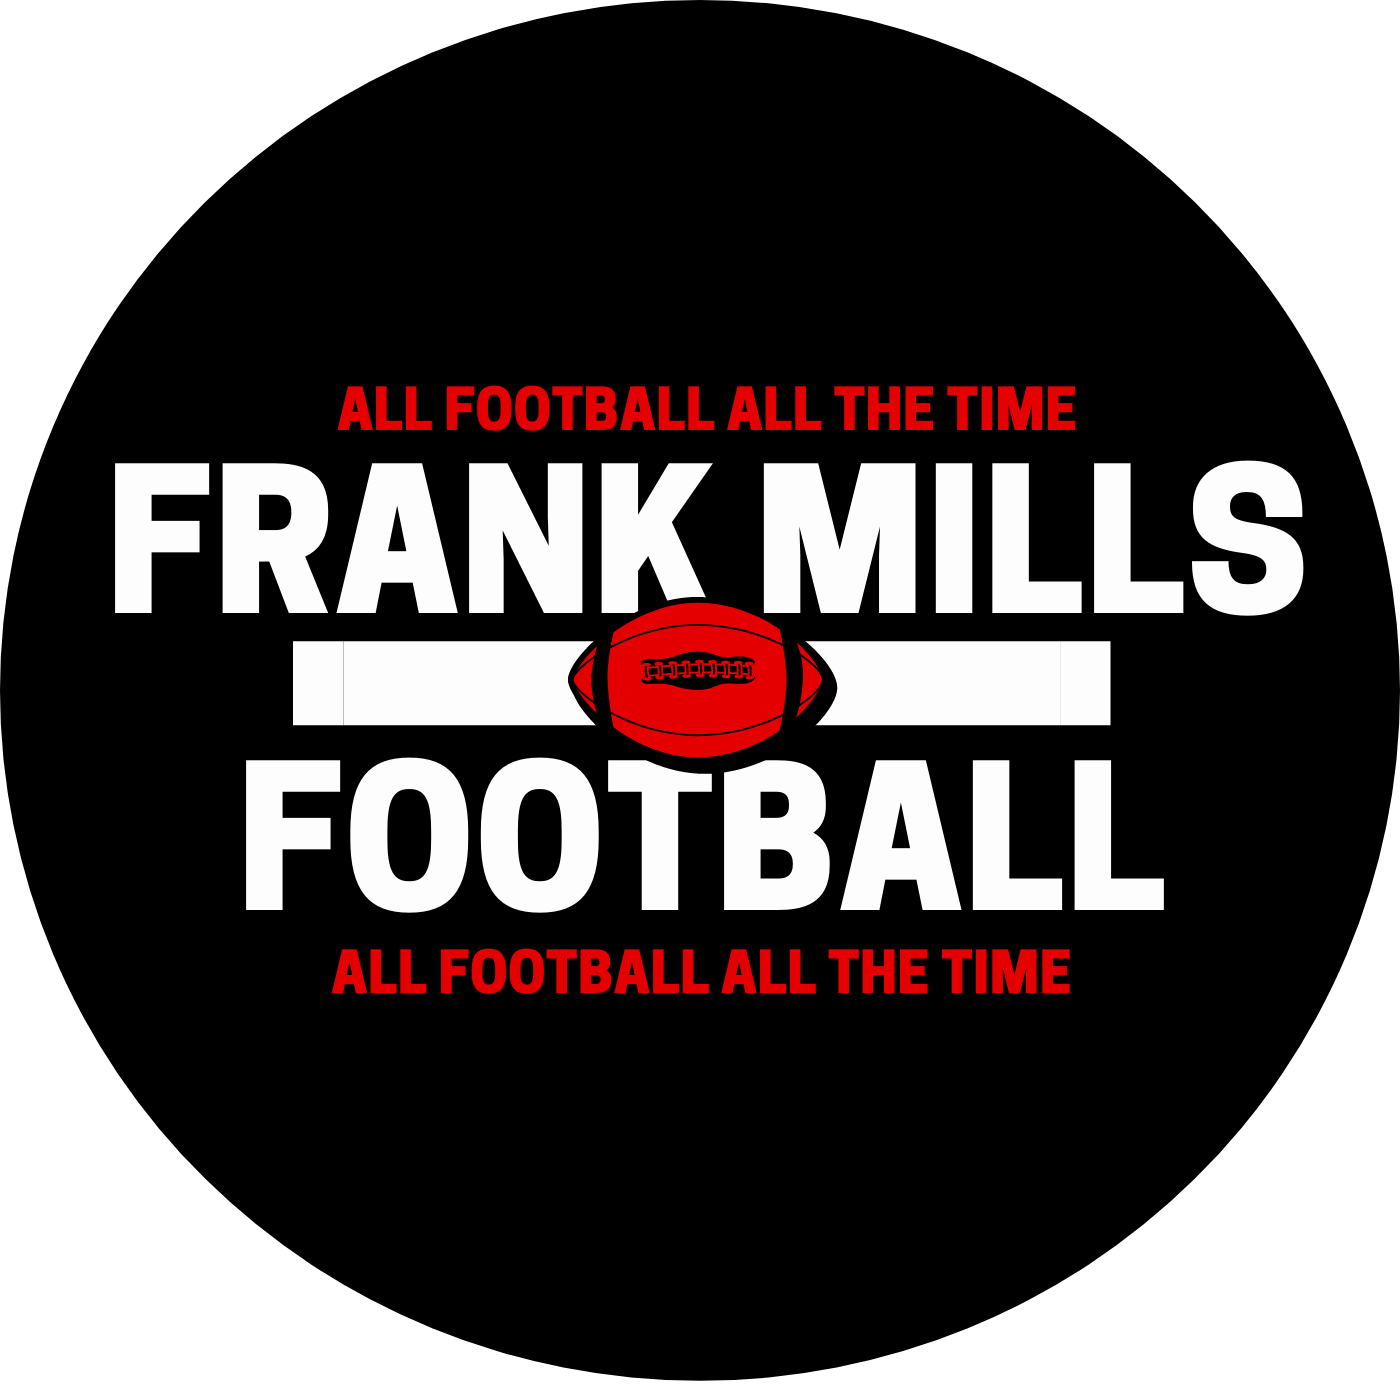 FRANK MILLS FOOTBALL